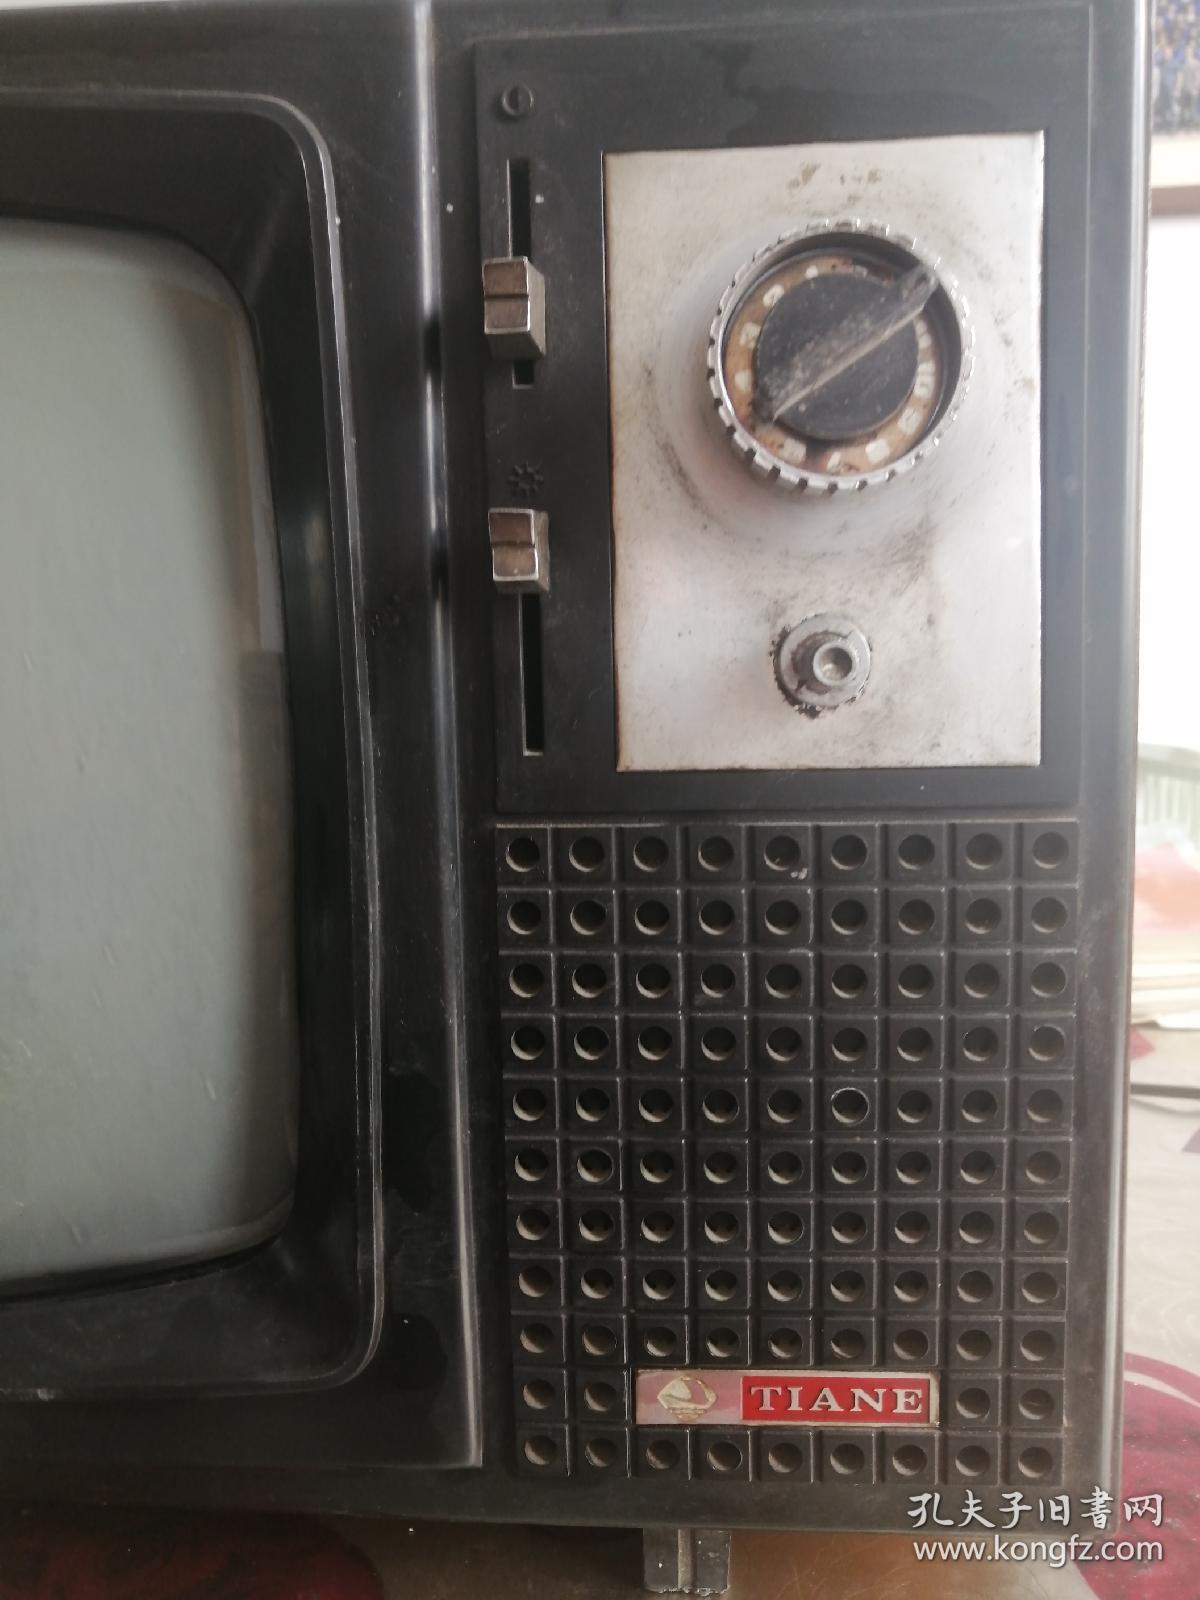 电视机 黑白电视机  天鹅牌  老物件 12英寸  第一代  木壳